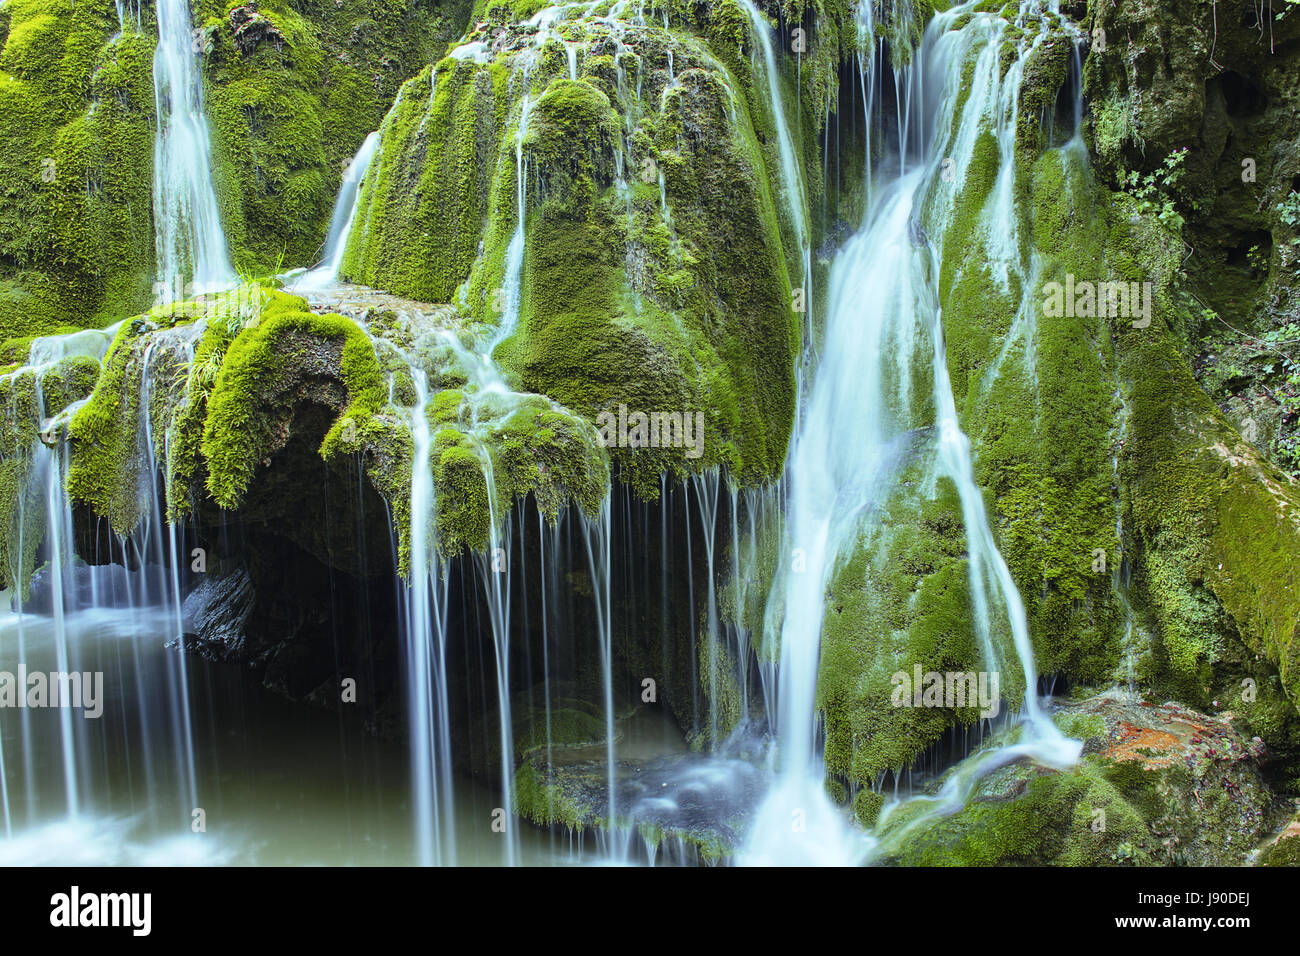 Belle cascade, la cascade de Bigar, Roumanie Banque D'Images